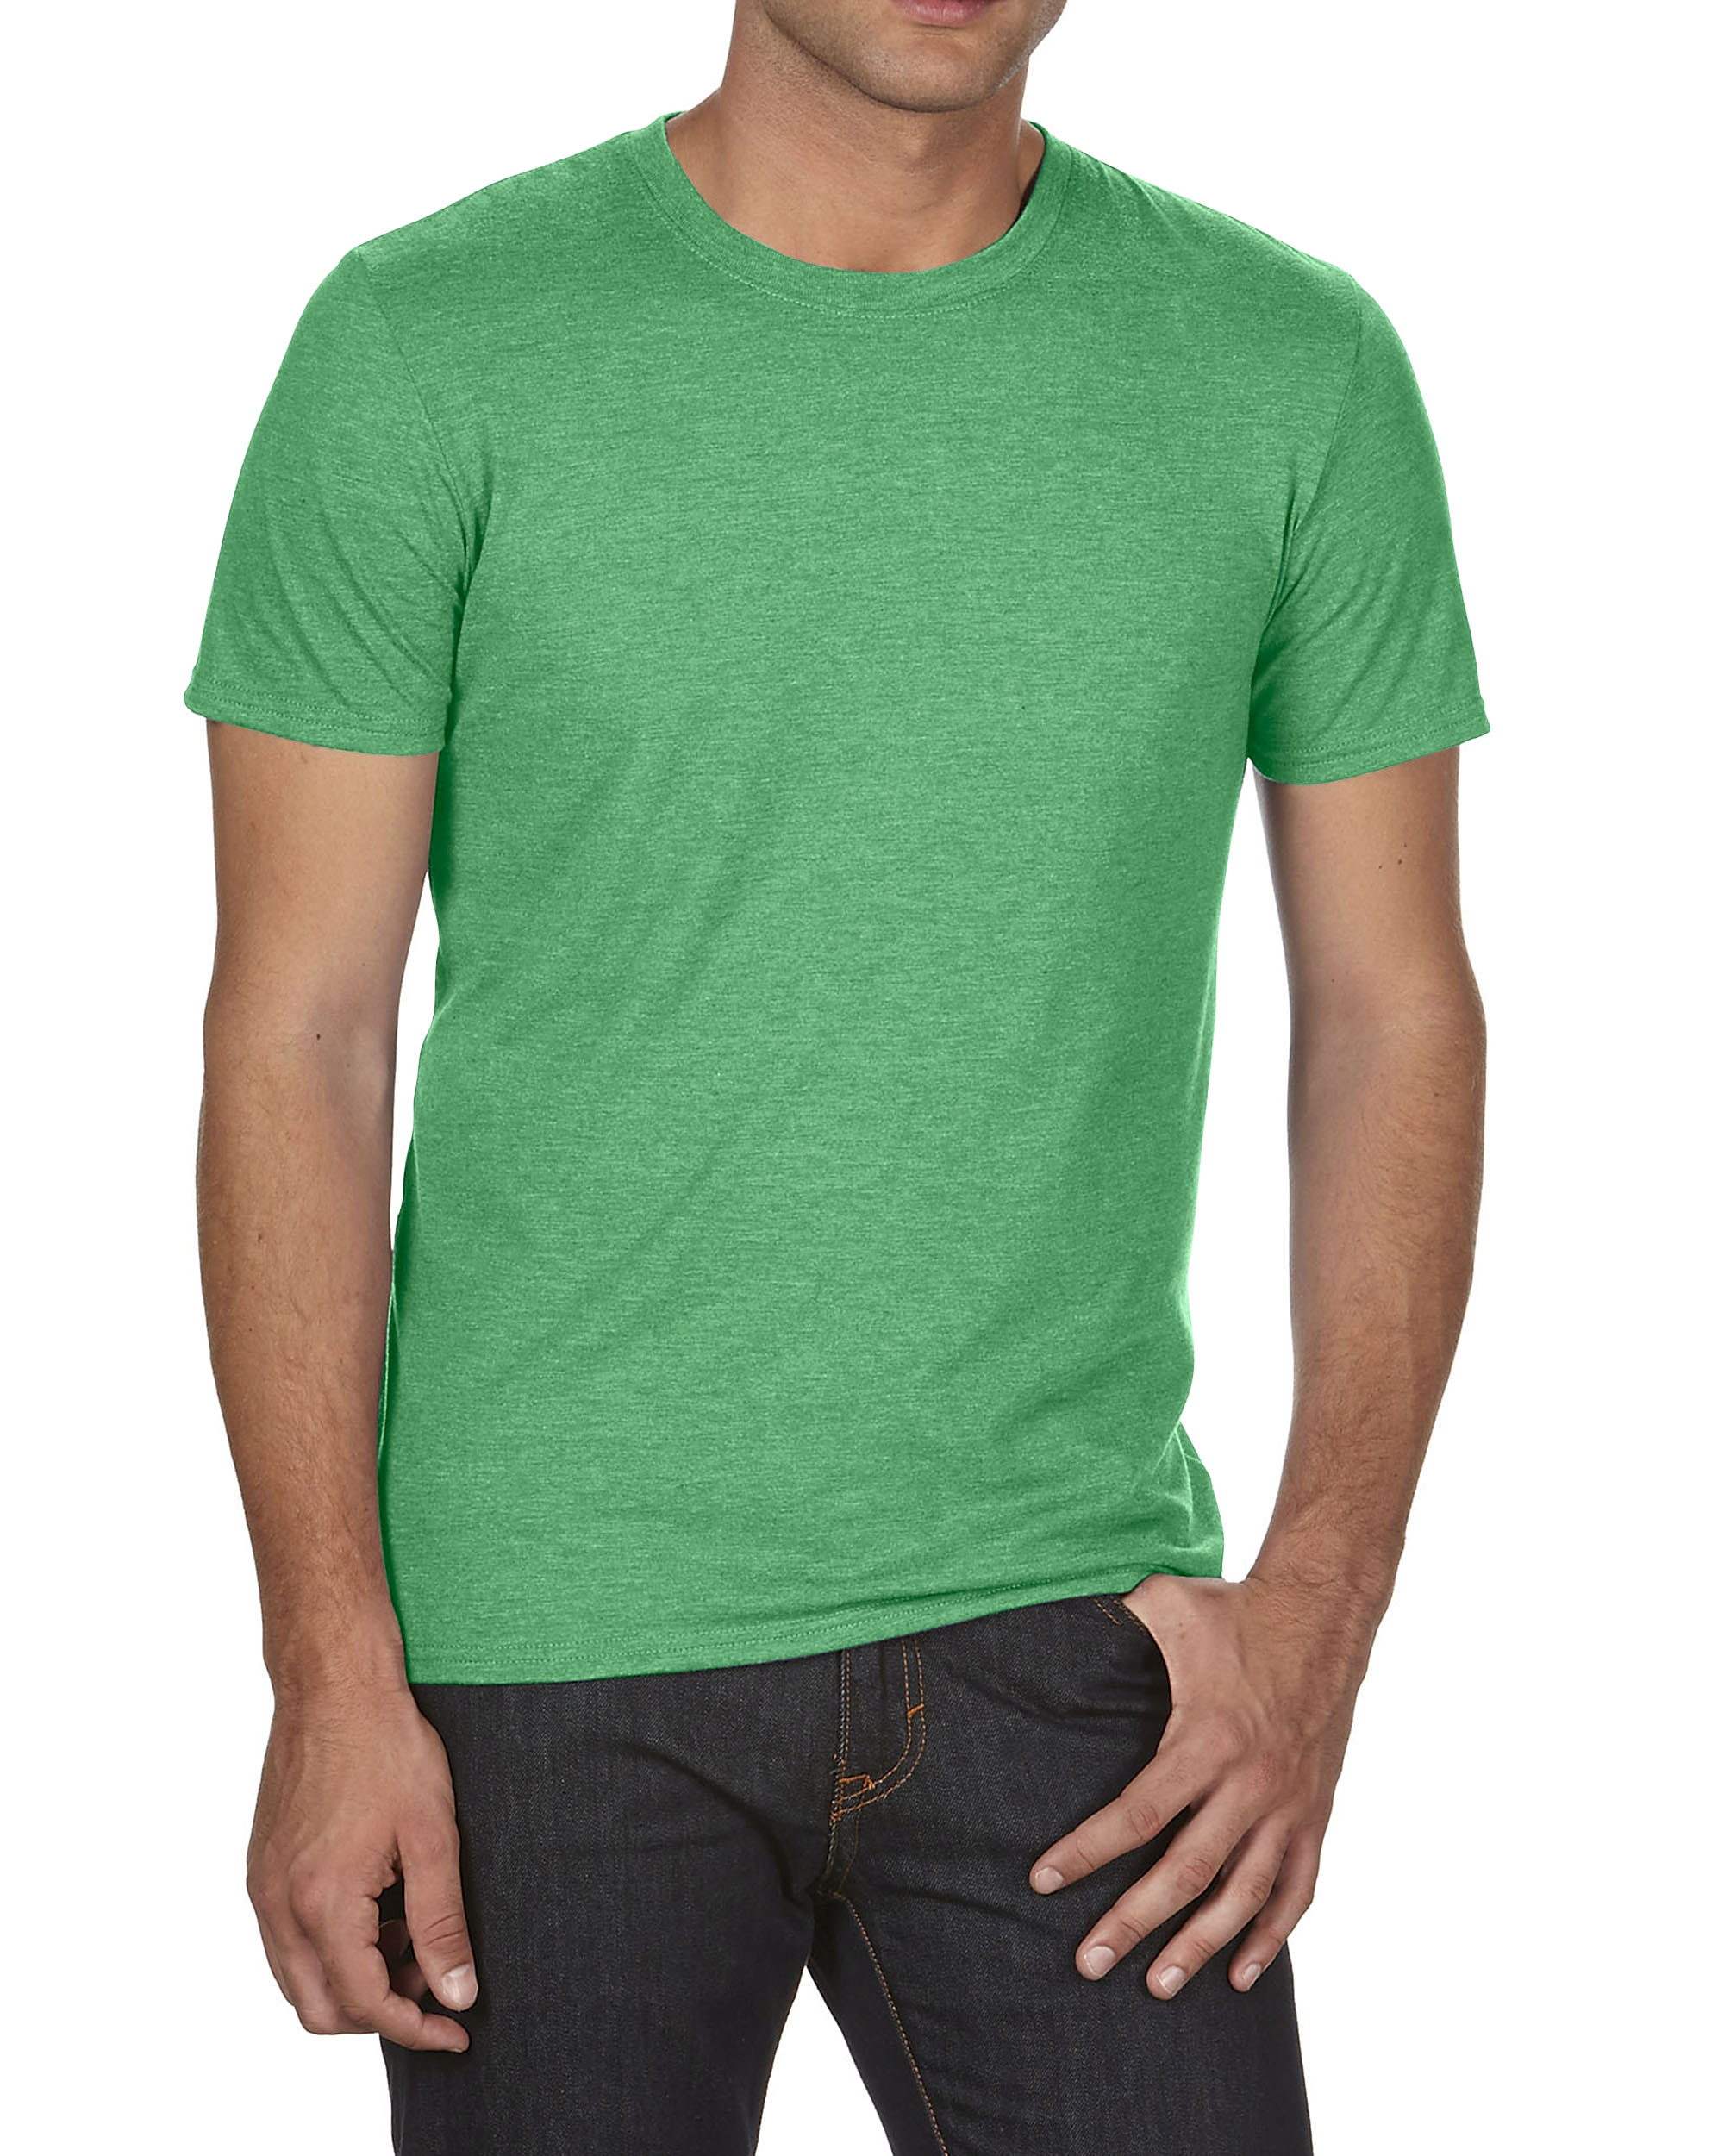 T-shirt Tri-Blend Tee ANVIL